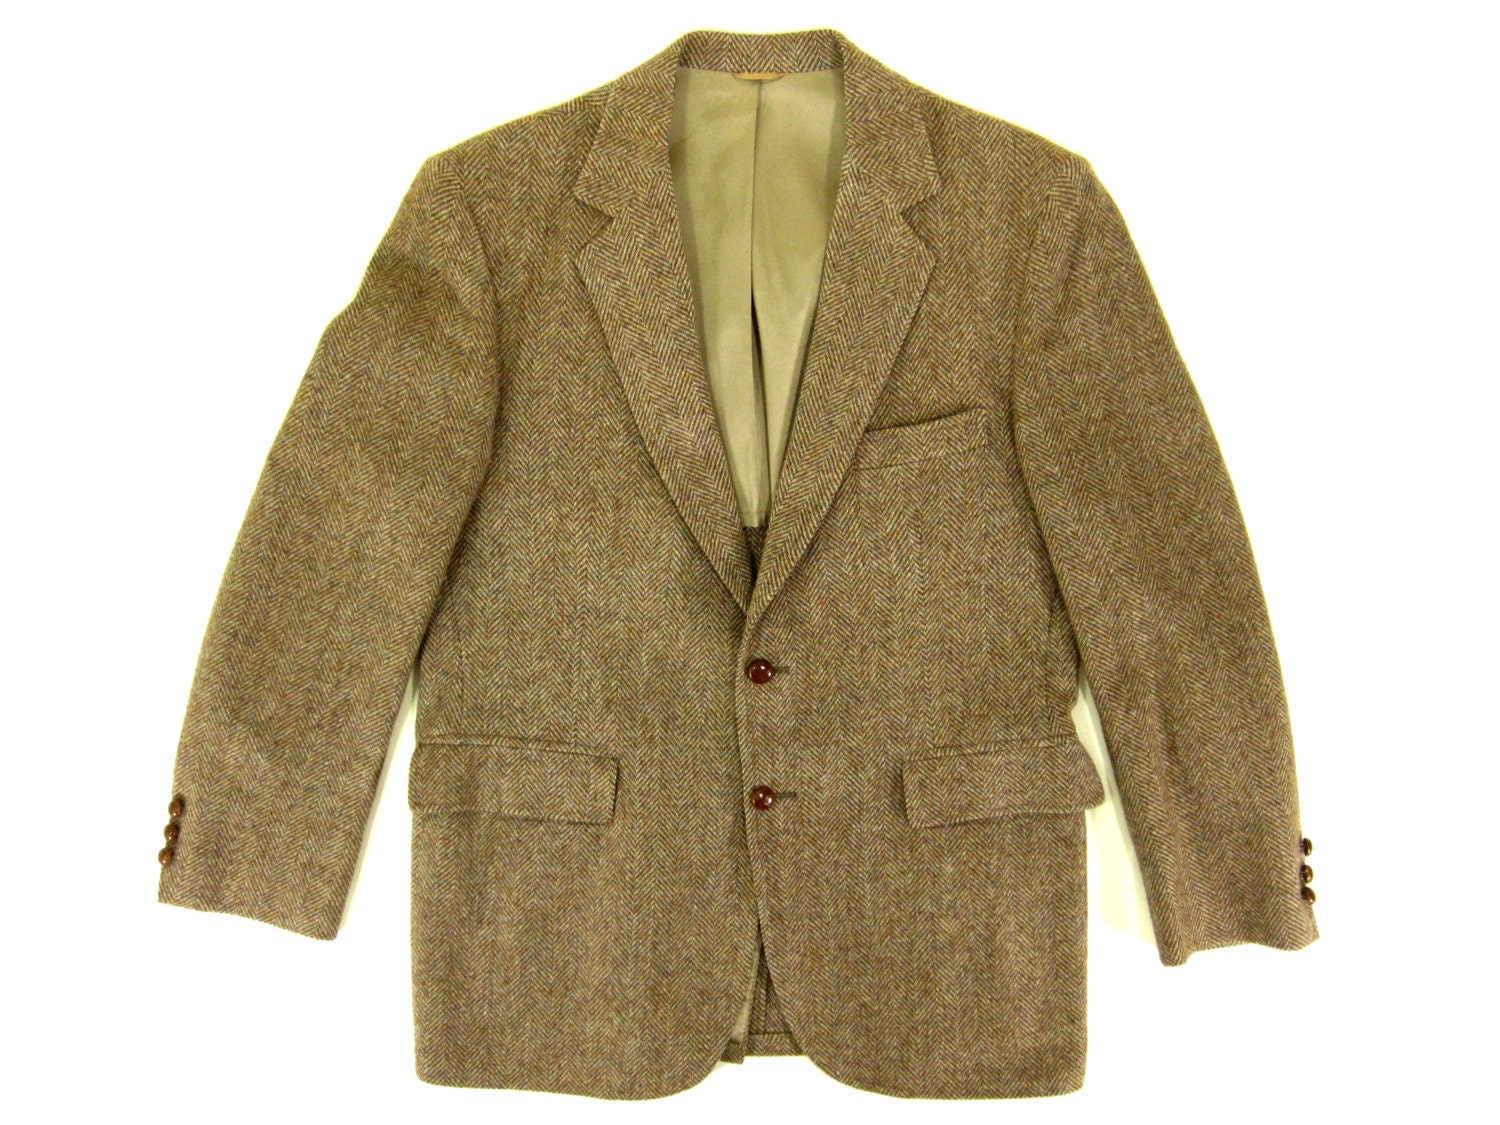 SALE Vintage Brown Tweed Sport Coat Jacket by IvyVintageCompany